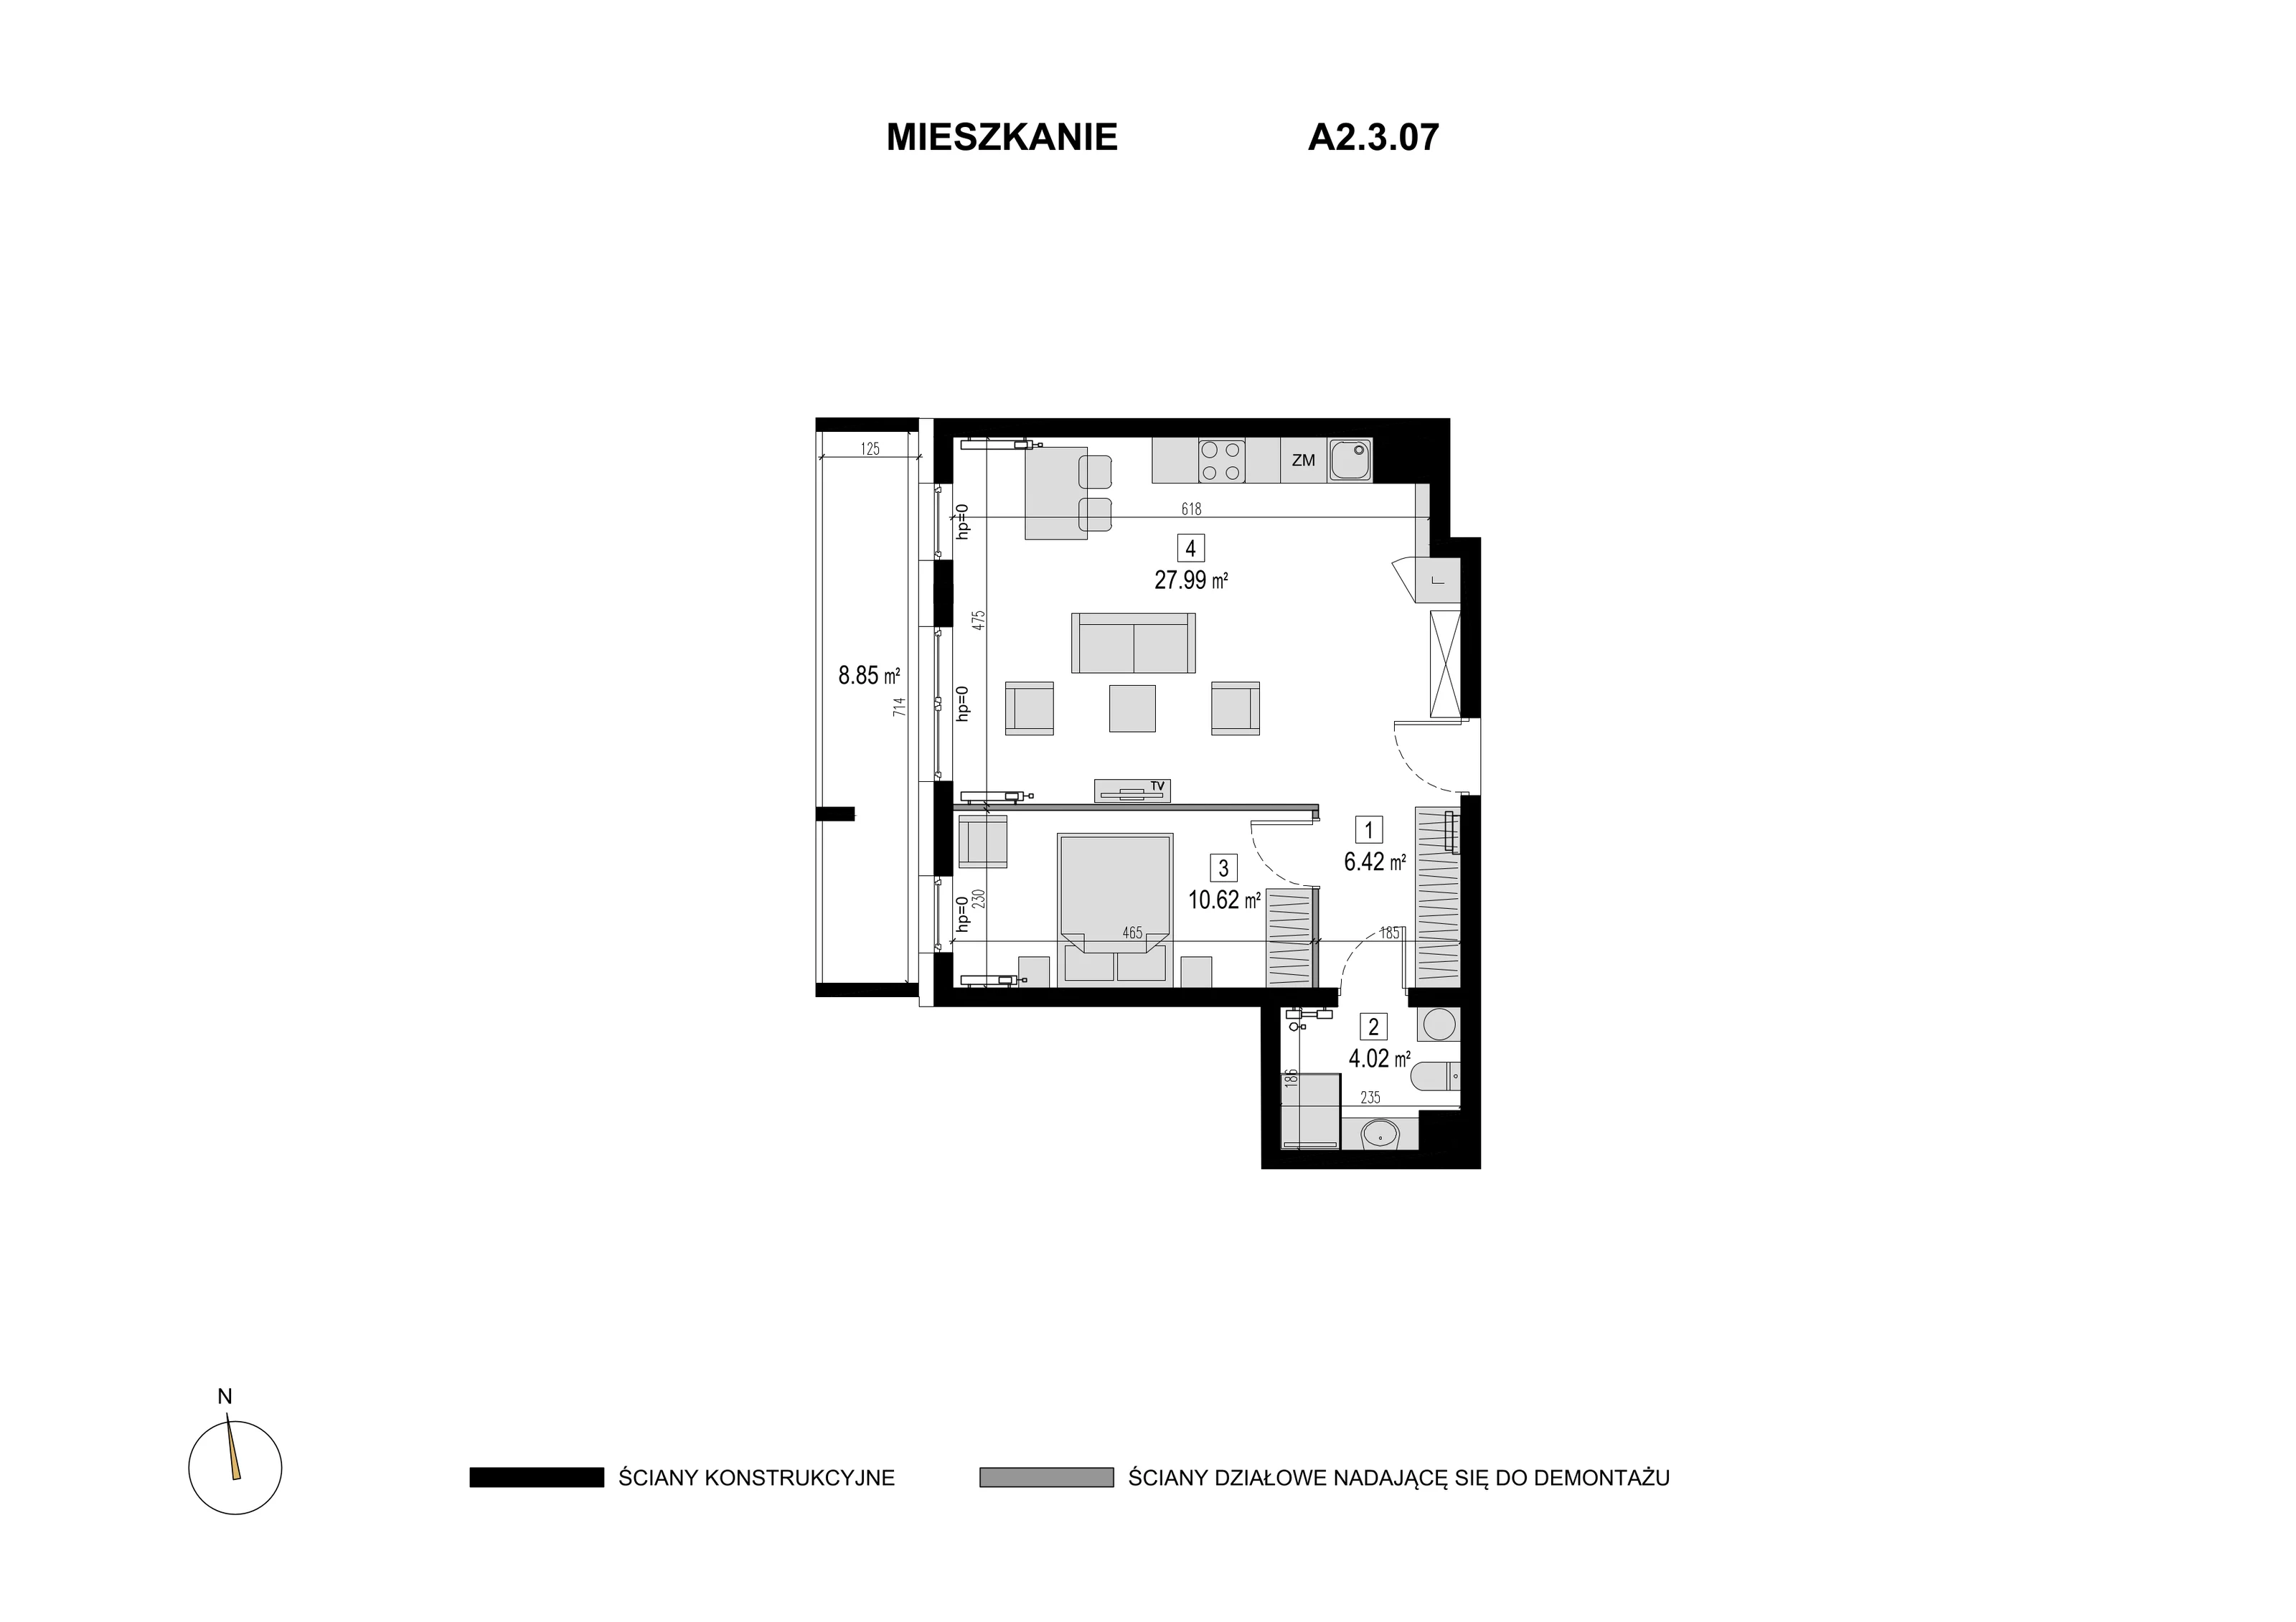 Mieszkanie 49,05 m², piętro 2, oferta nr A2.3.07, Novaforma, Legnica, ul. Chojnowska